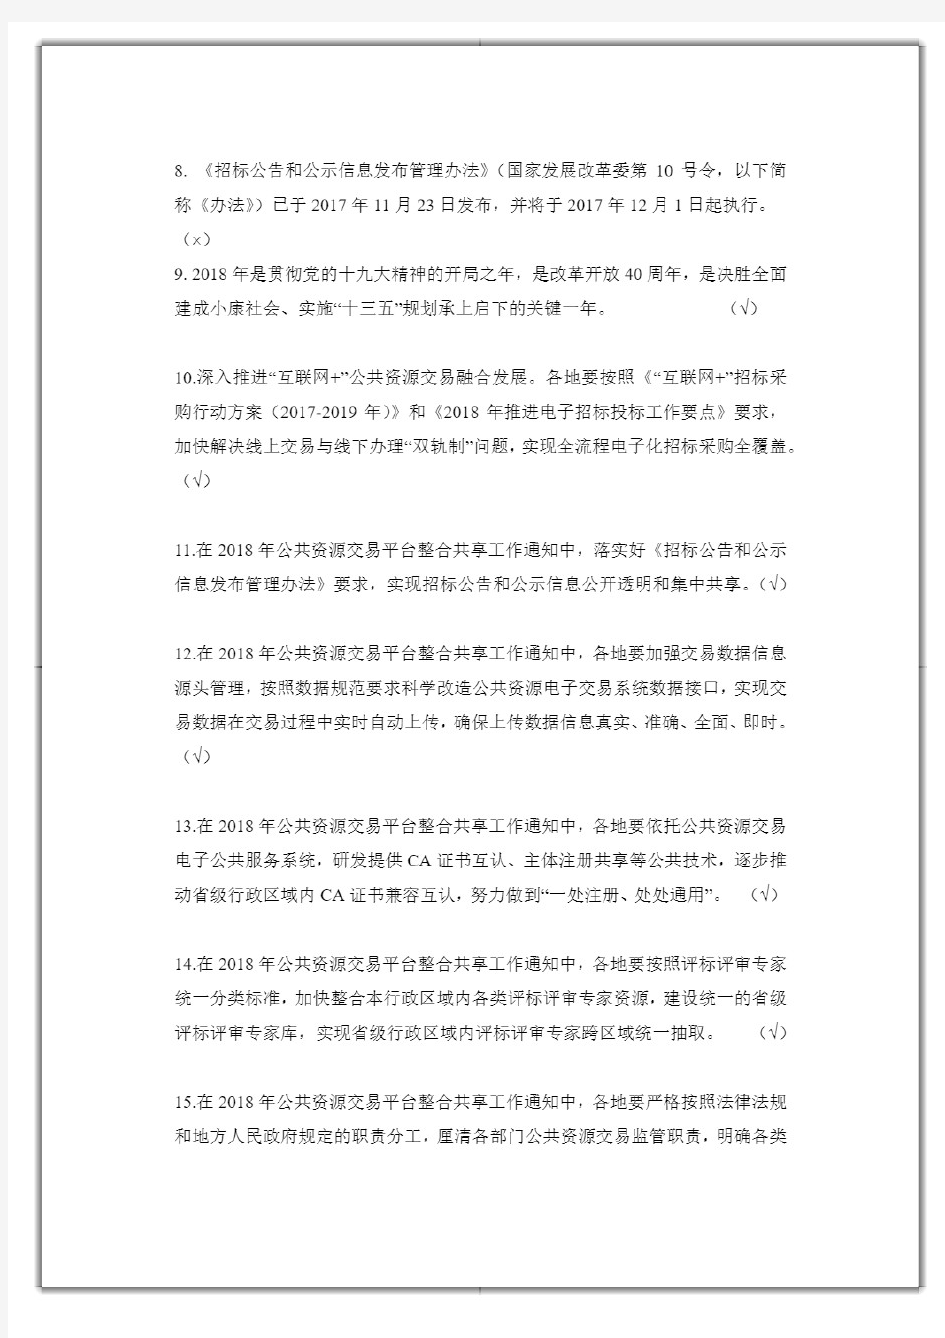 湖南省综合评标专家库在线培训系统知识题库(2020年版)》法律法规、评标办法、职业道德判断题